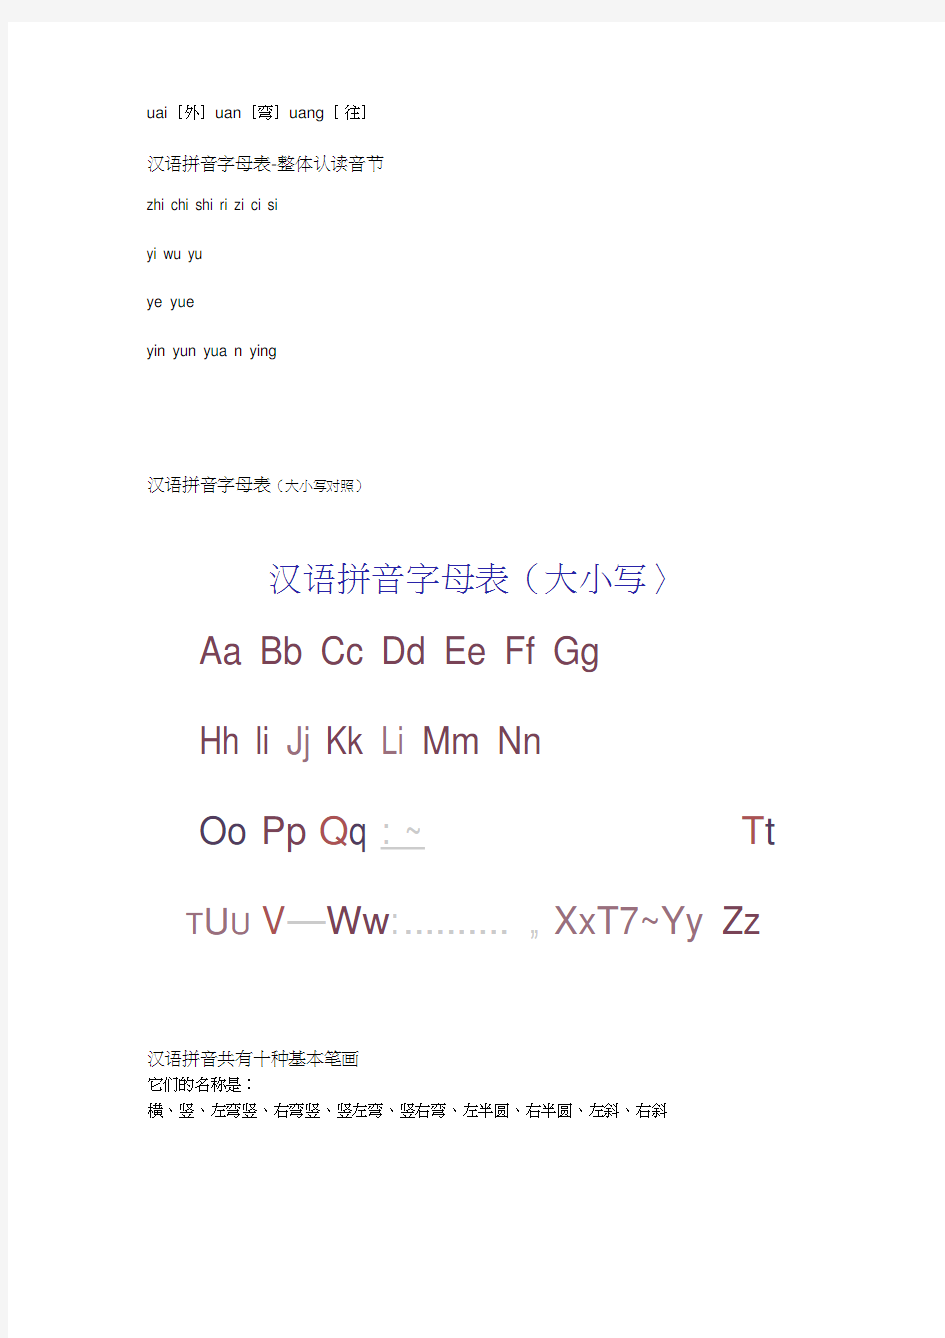 一年级语文26个汉语拼音字母表读法+写法+笔顺